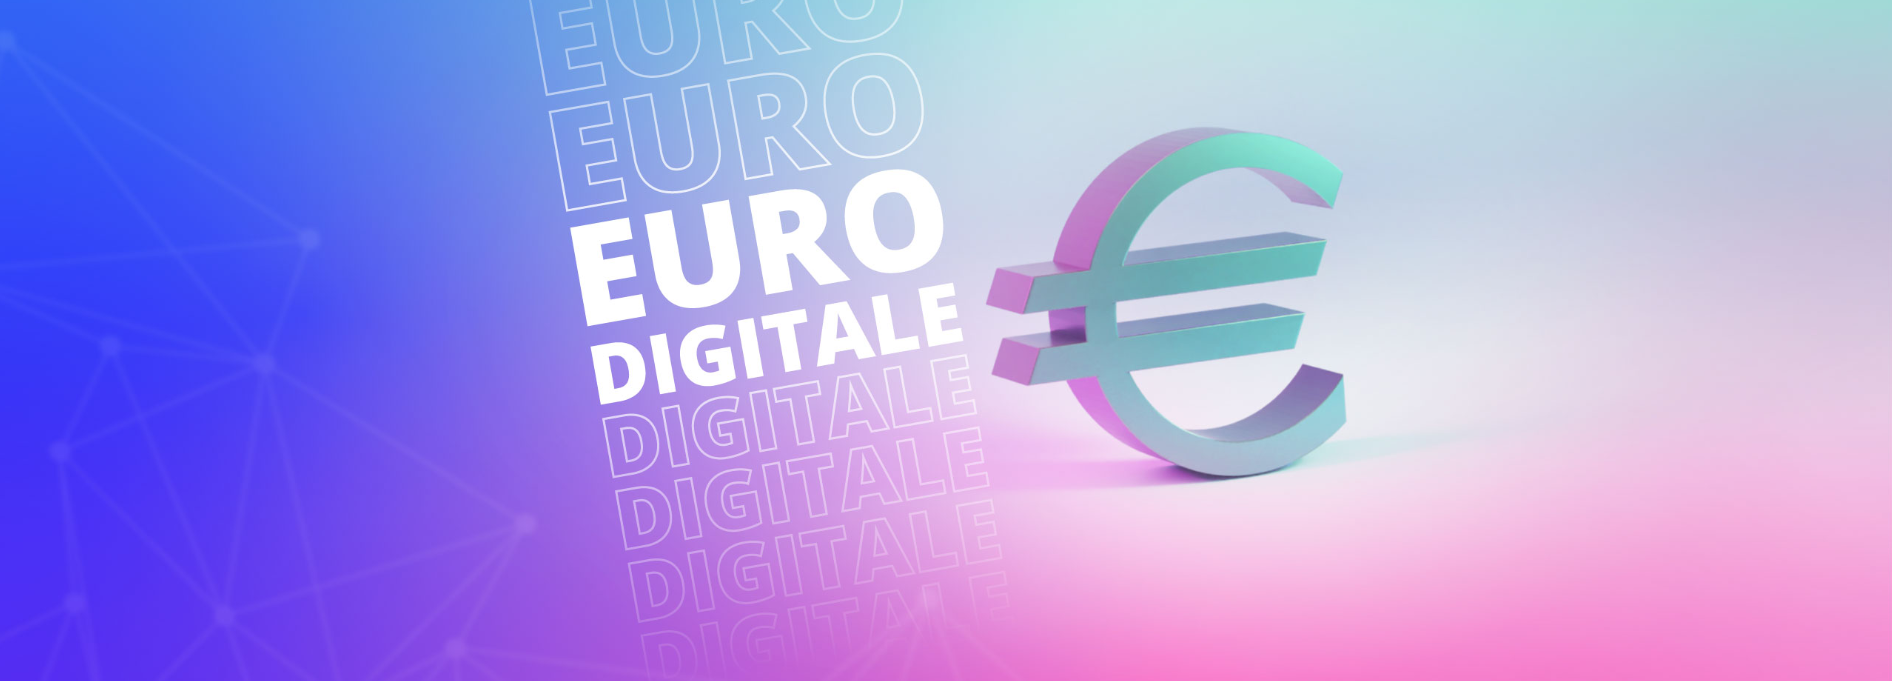 Euro digitale: avviata la fase “di preparazione”